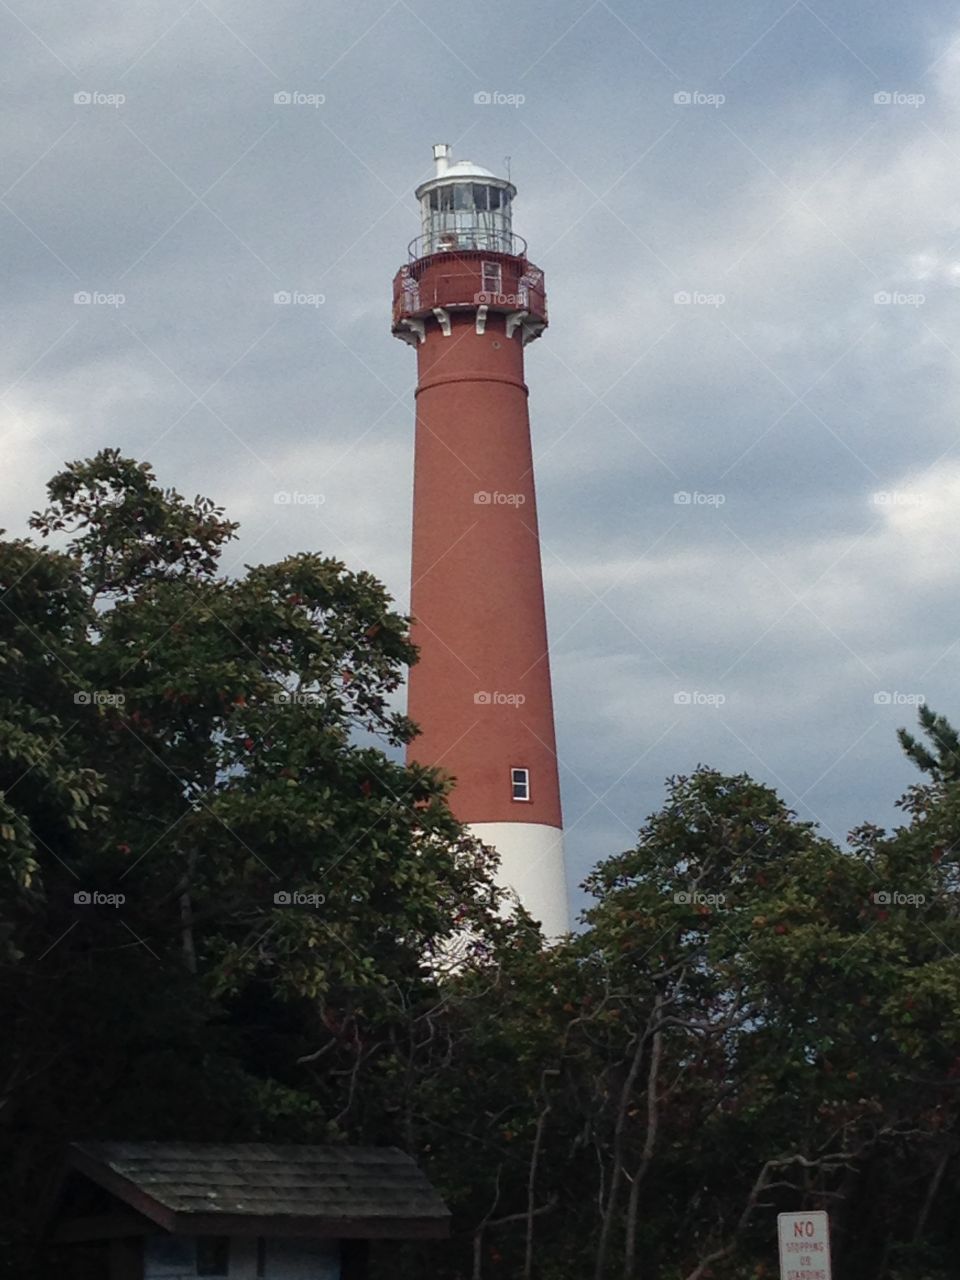 Barnegat Bay Lighthouse, New Jersey